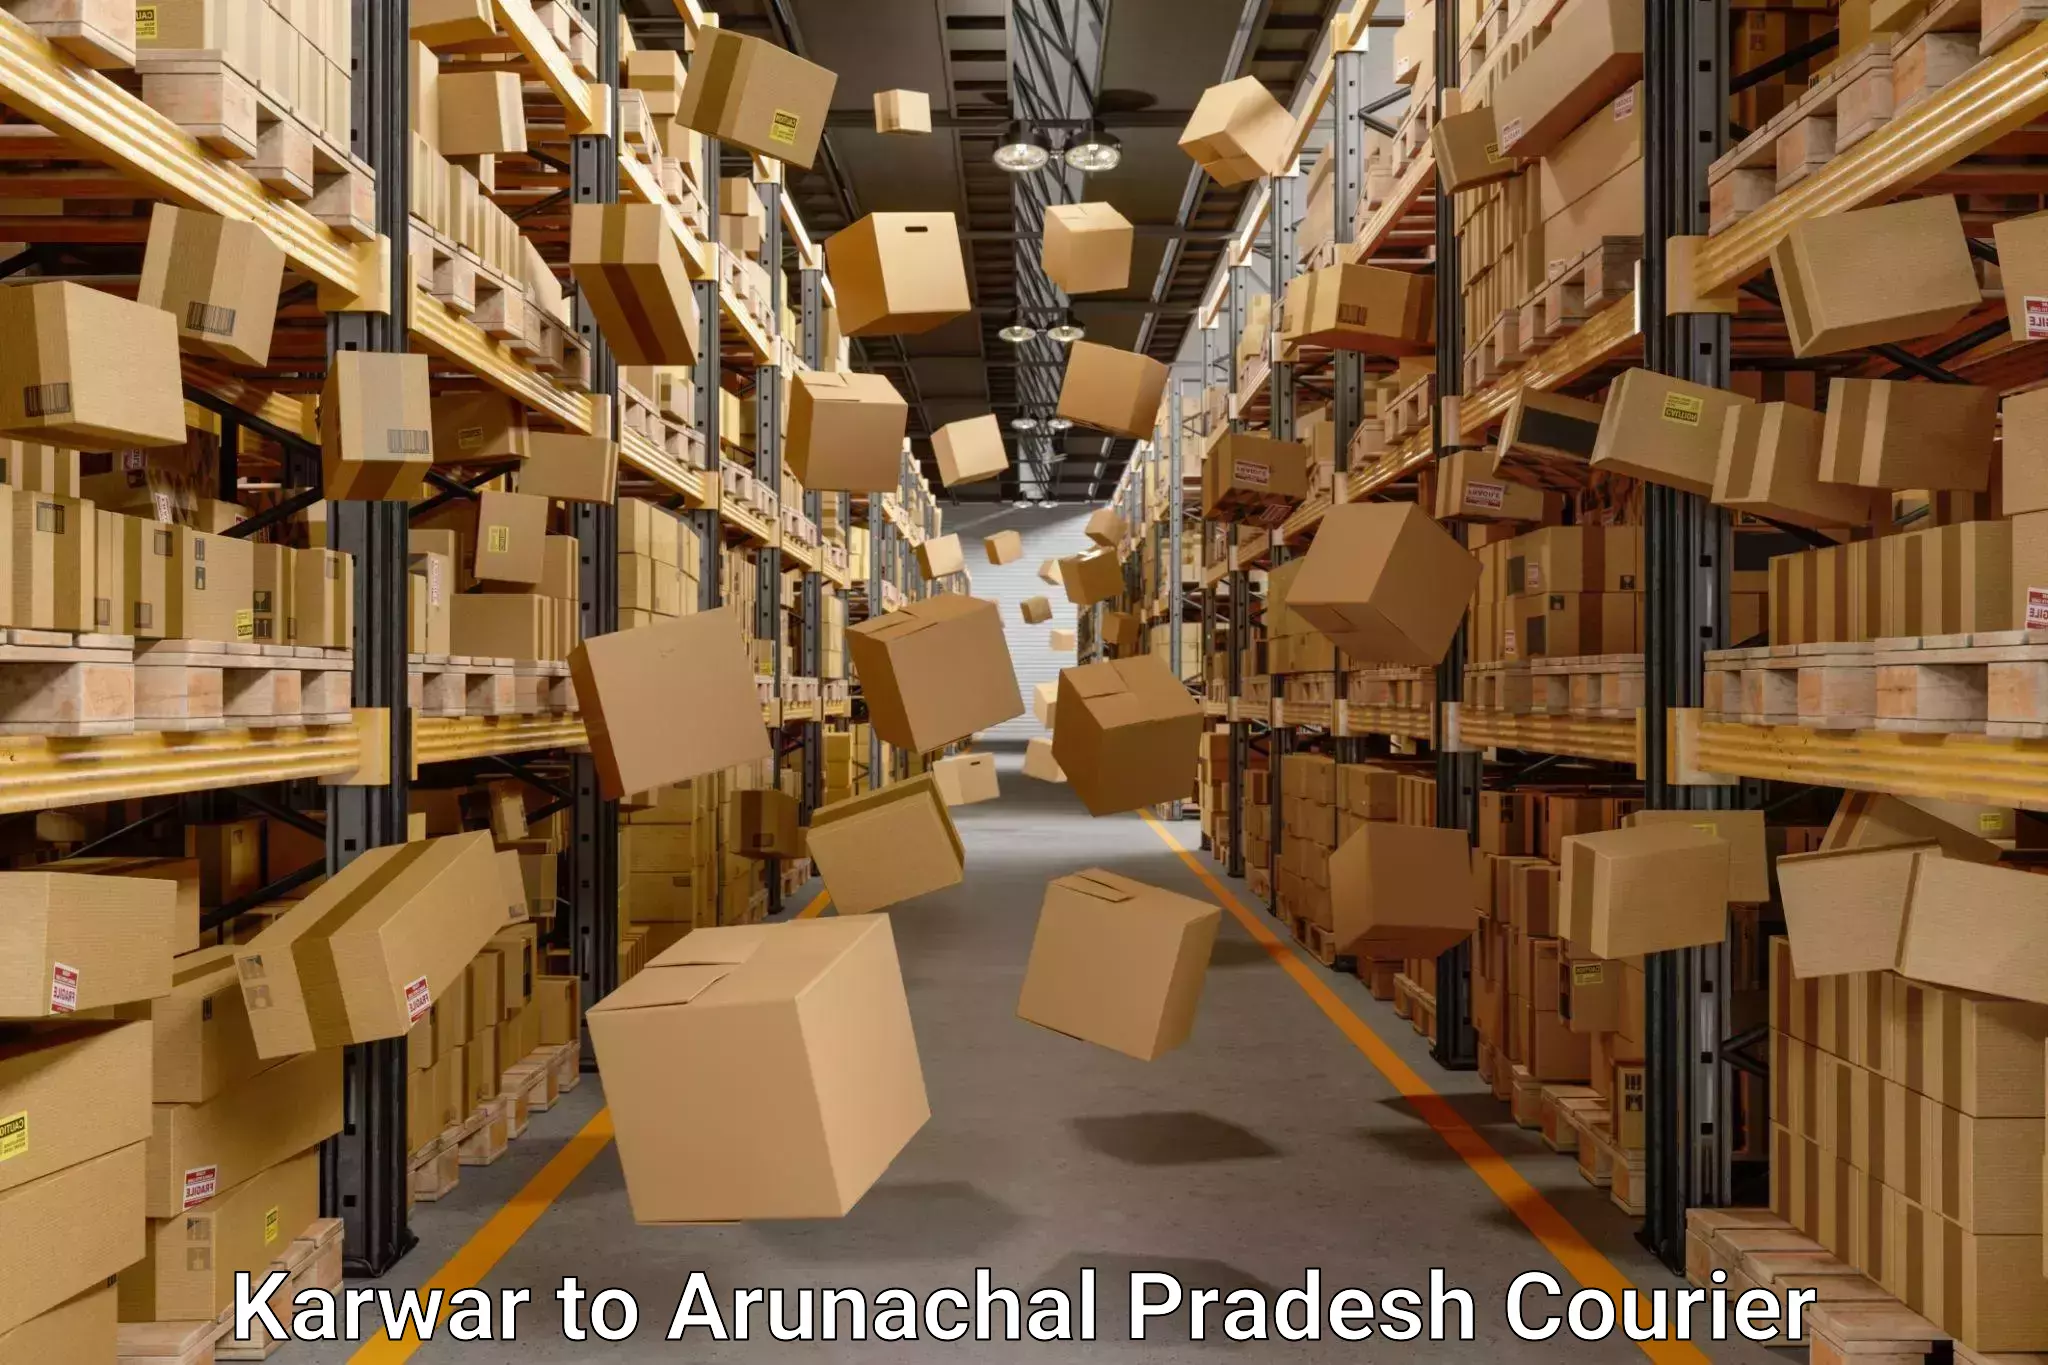 Trusted relocation services Karwar to Arunachal Pradesh